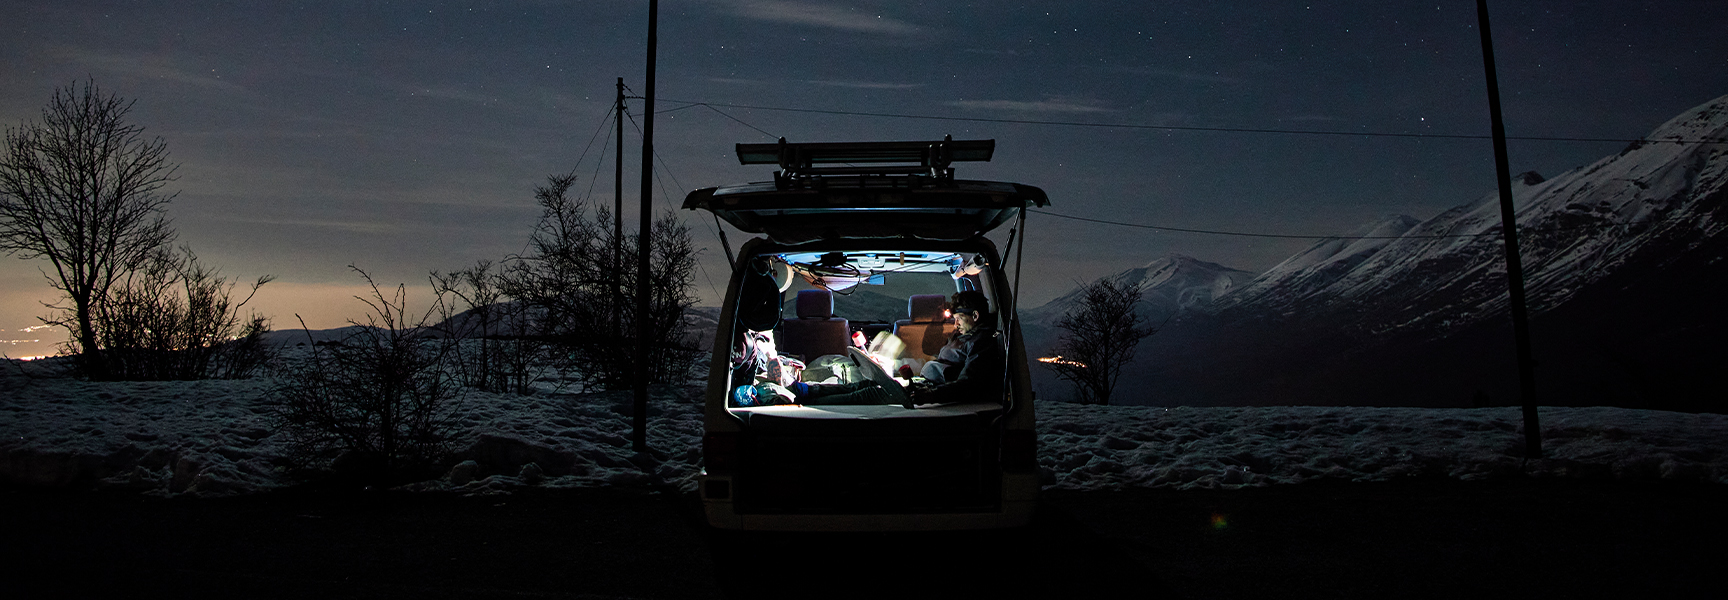 Personen sitzen im Auto und verwenden Campinglampen